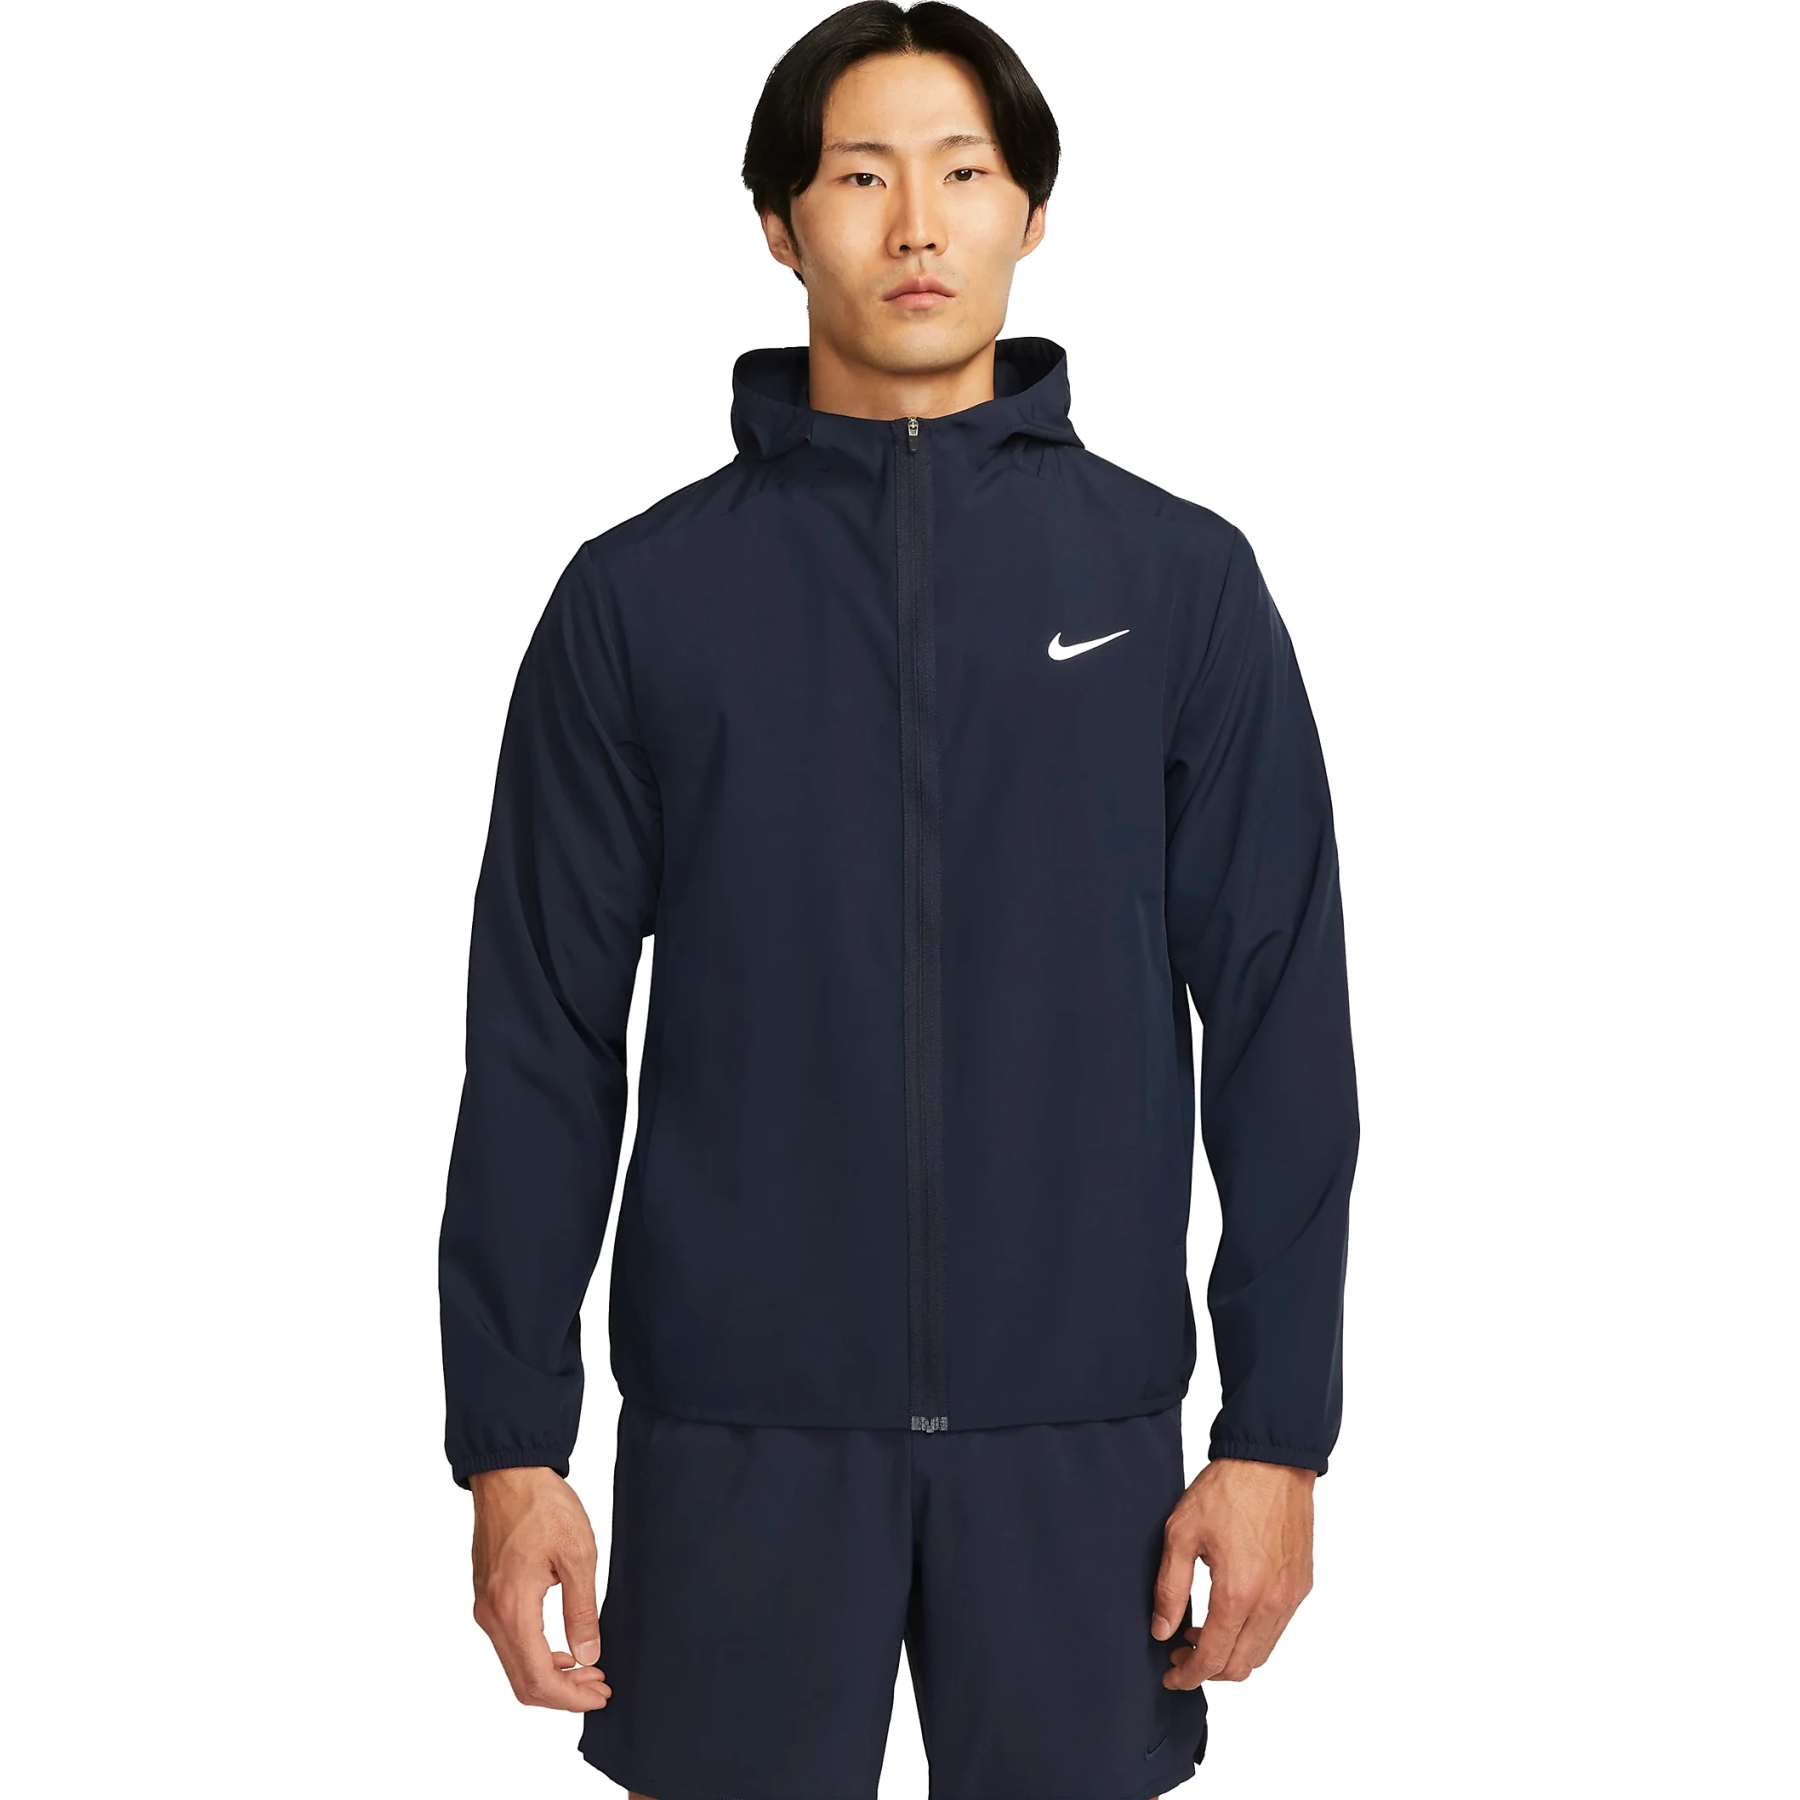 Produktbild von Nike Form Dri-FIT Jacke mit Kapuze für Herren - obsidian/reflective silver FB7482-451